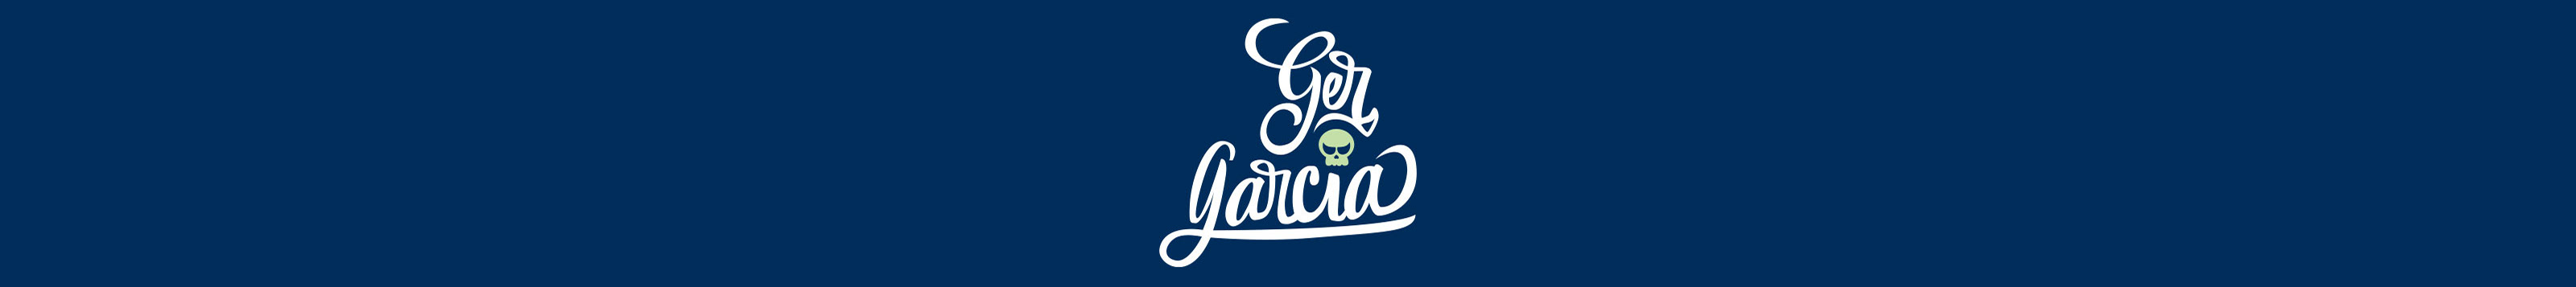 Ger Garcia's profile banner